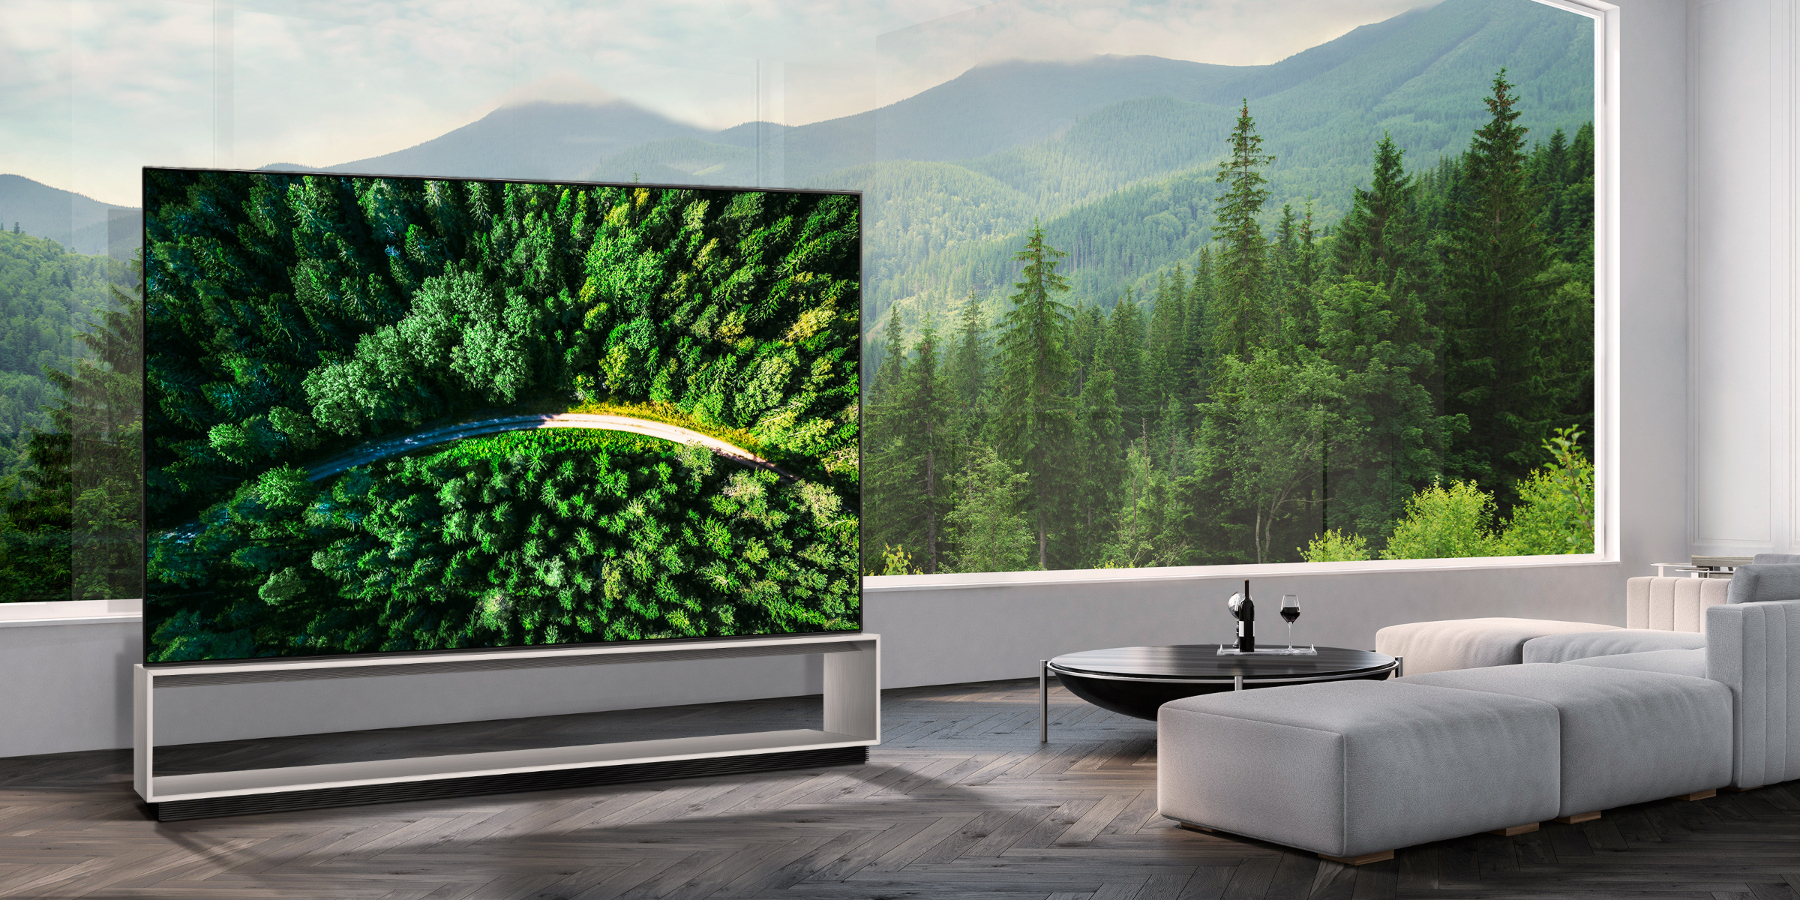 &إل جي إلكترونيكس& تُعلن رسمياً بدء بيع تلفاز OLED بدقة 8K الأول من نوعه في العالم